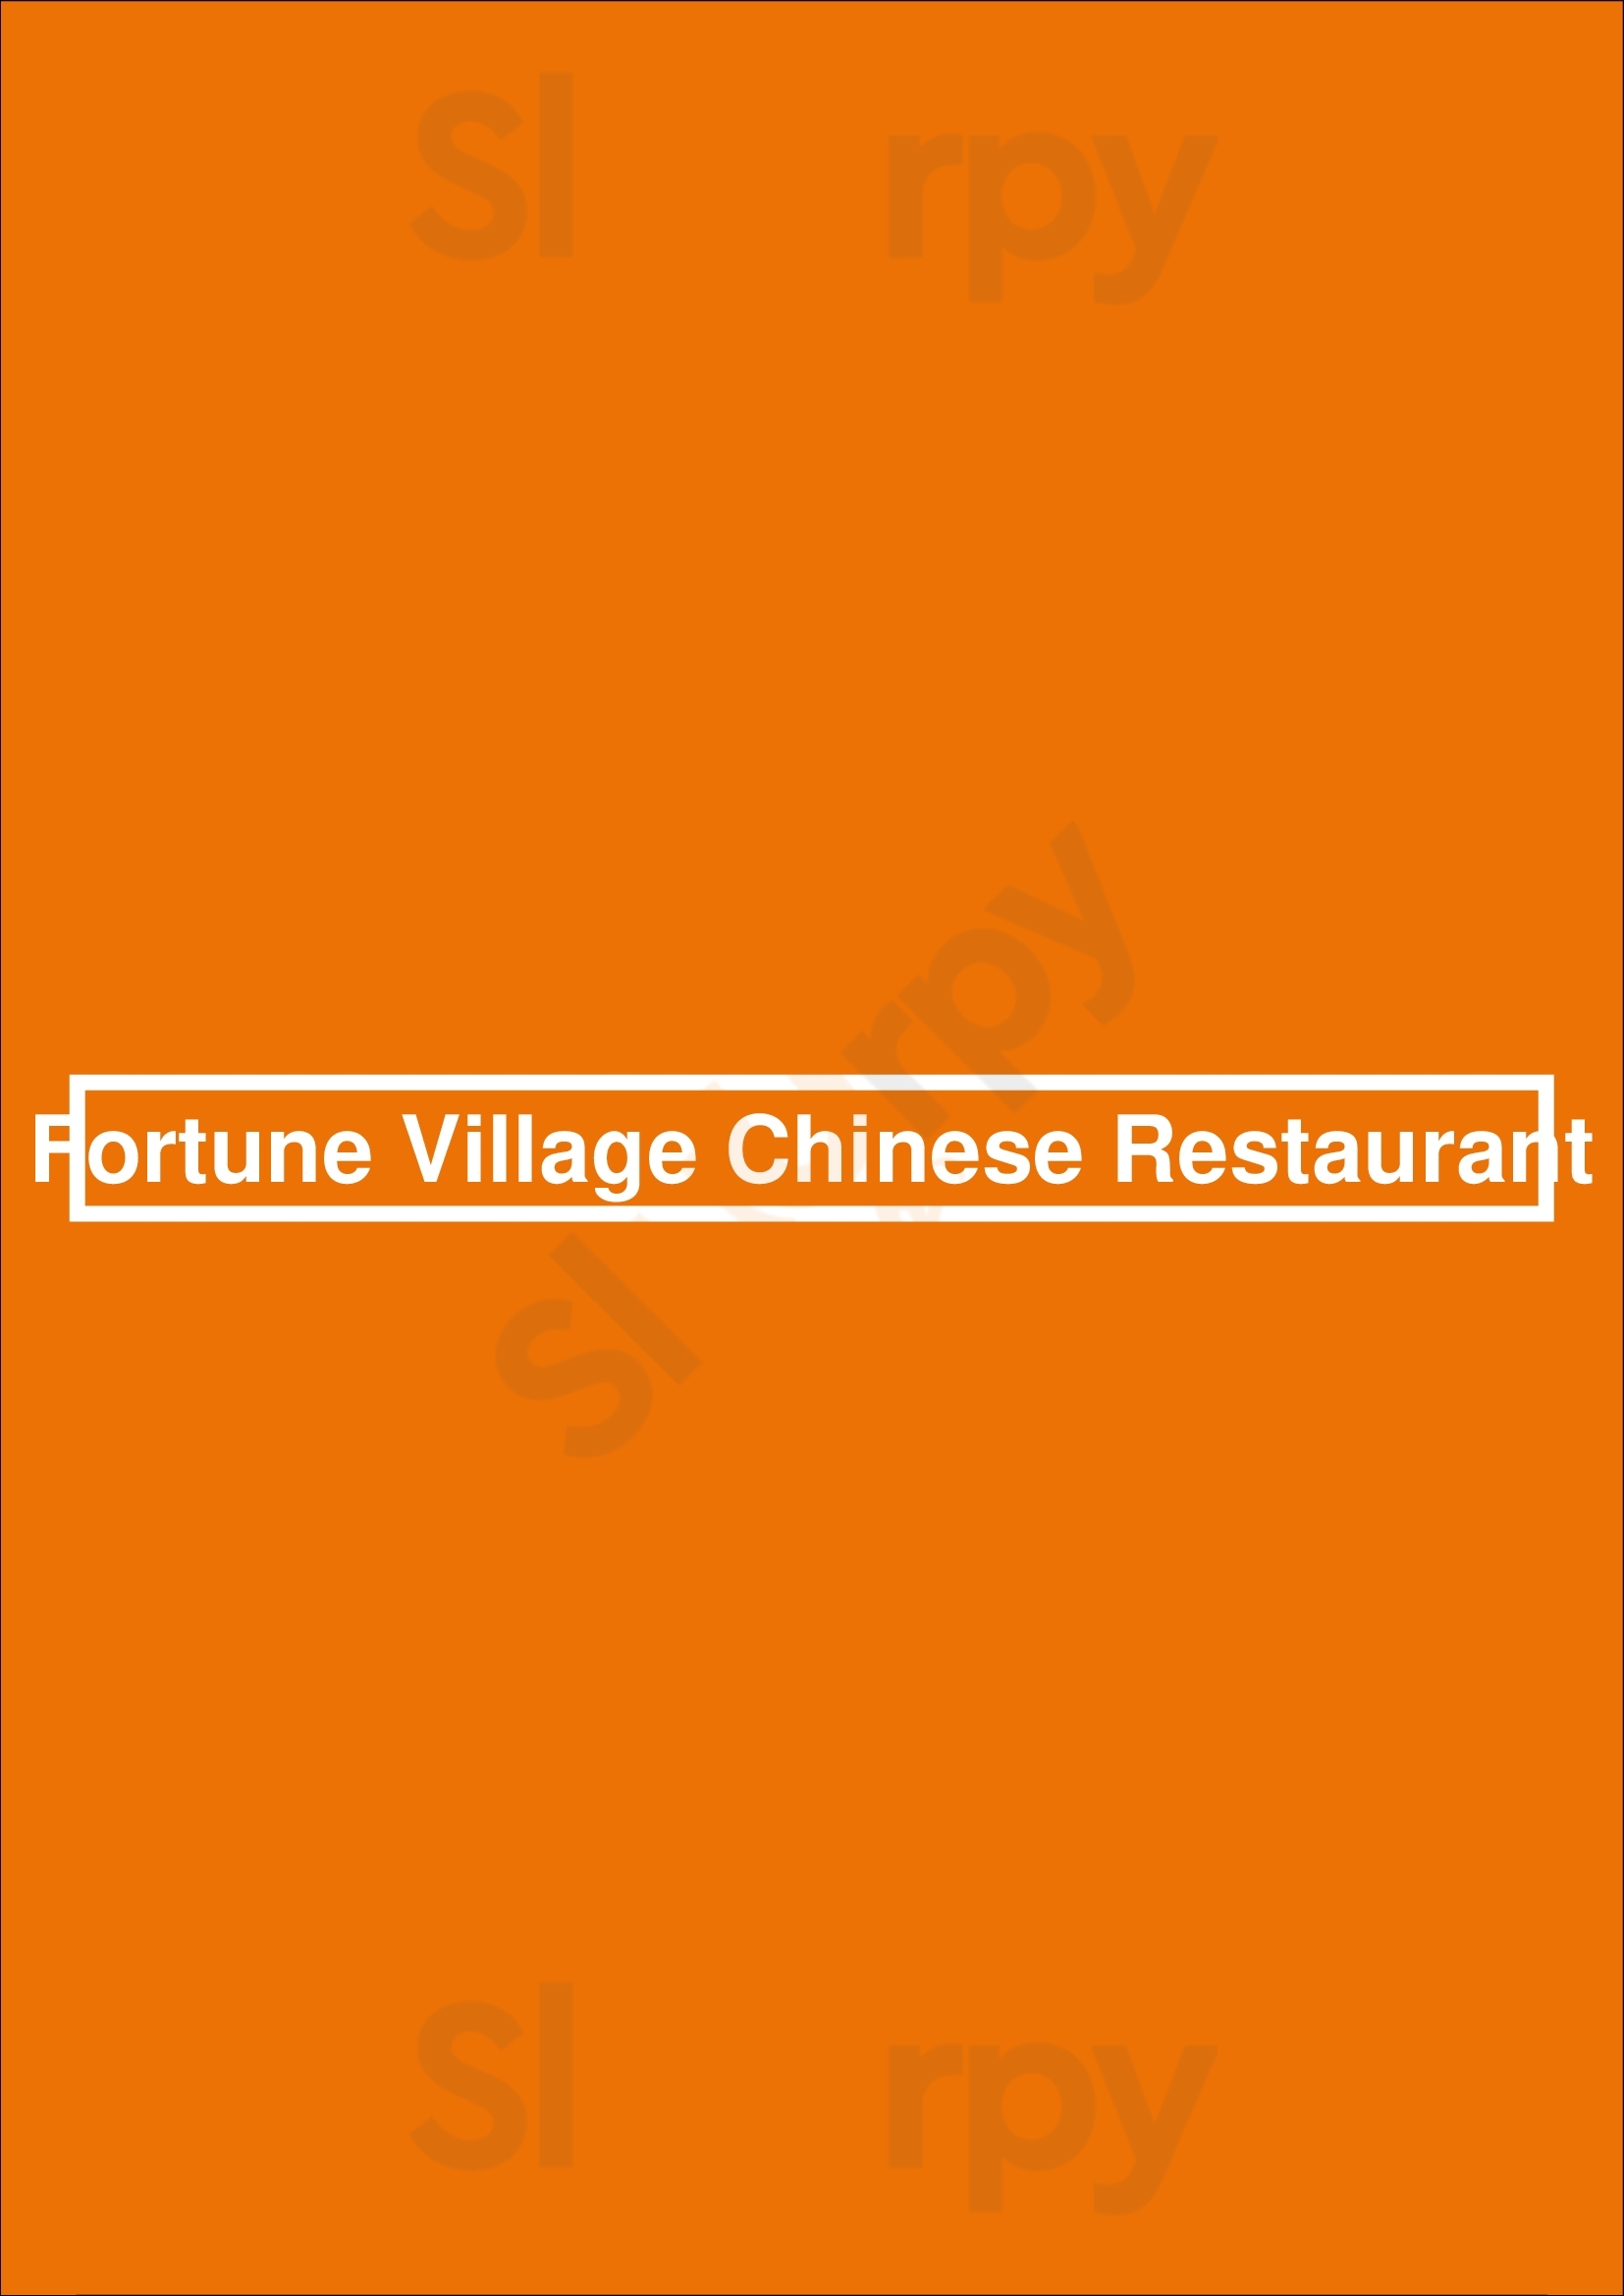 Fortune Village Chinese Restaurant Sydney Menu - 1